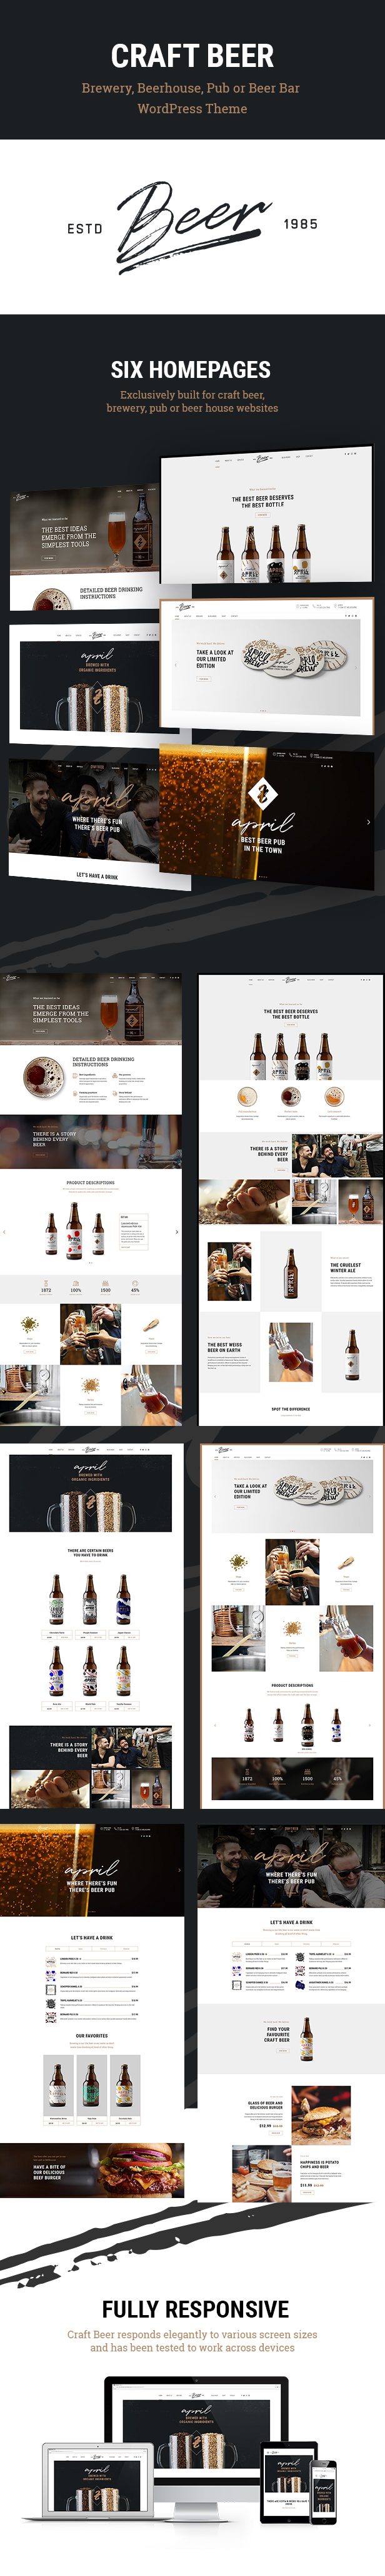 Beer p01 - Craft Beer - Brewery & Pub WordPress Theme